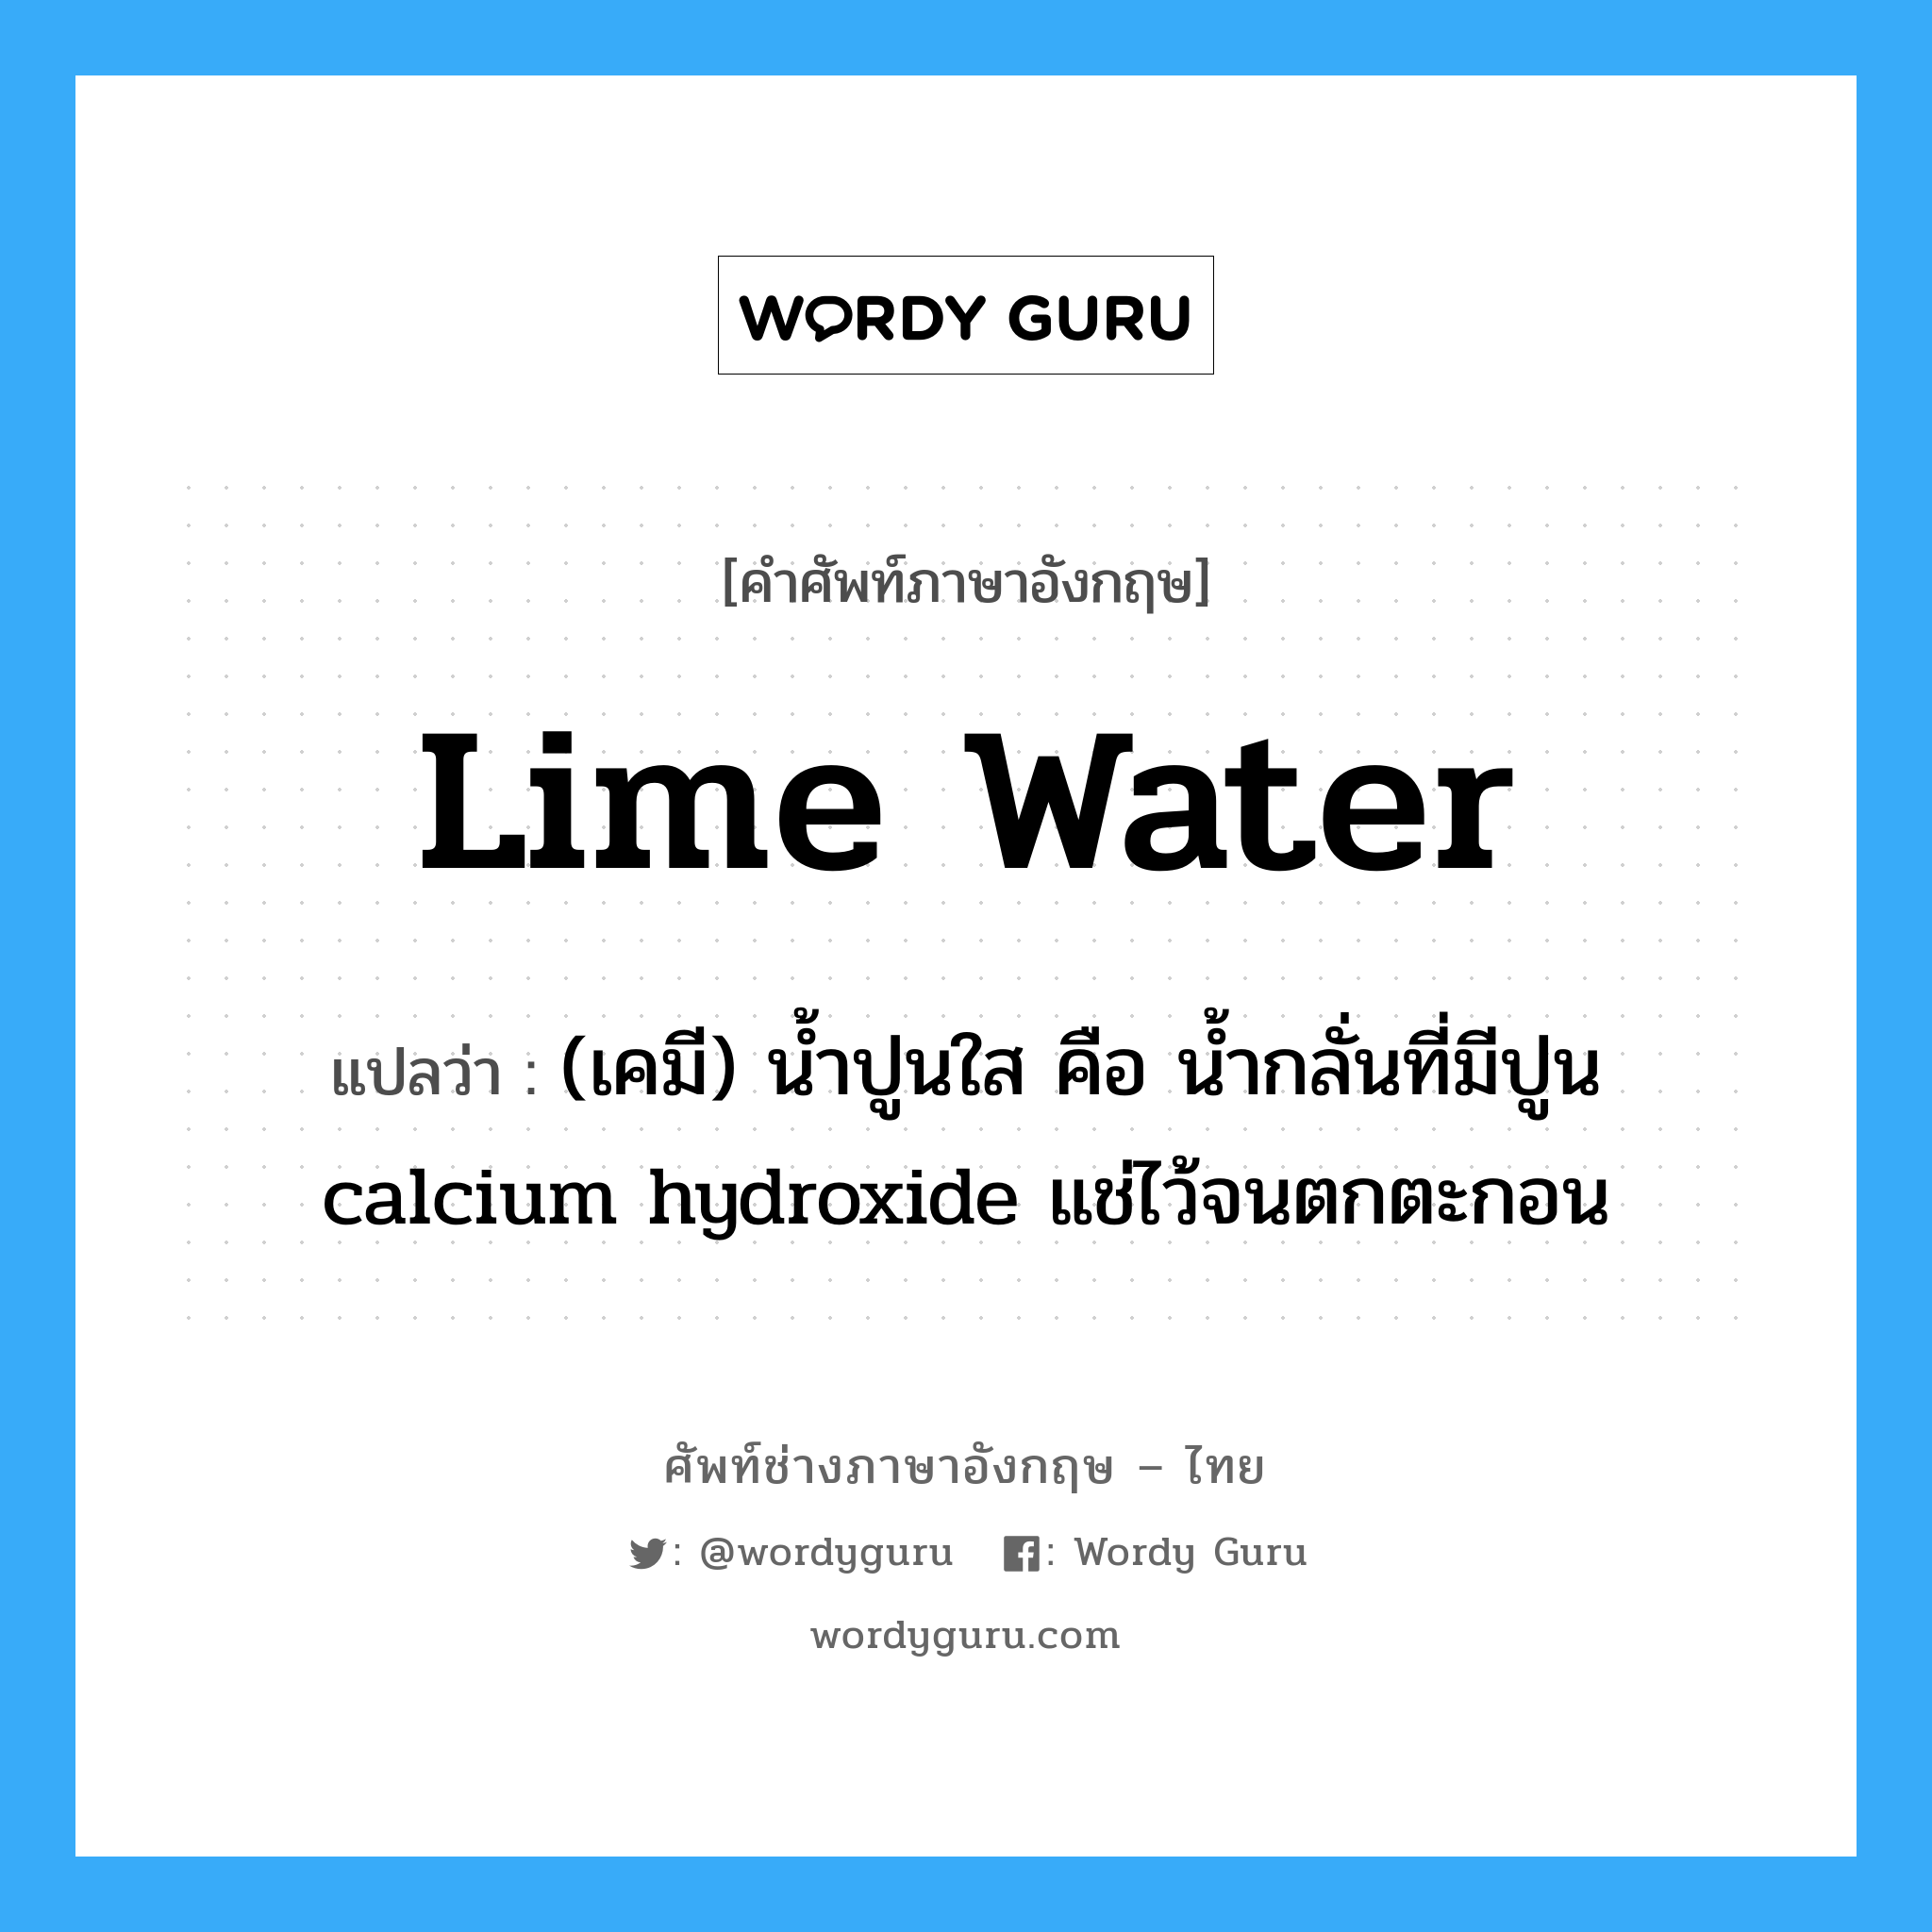 lime water แปลว่า?, คำศัพท์ช่างภาษาอังกฤษ - ไทย lime water คำศัพท์ภาษาอังกฤษ lime water แปลว่า (เคมี) น้ำปูนใส คือ น้ำกลั่นที่มีปูน calcium hydroxide แช่ไว้จนตกตะกอน